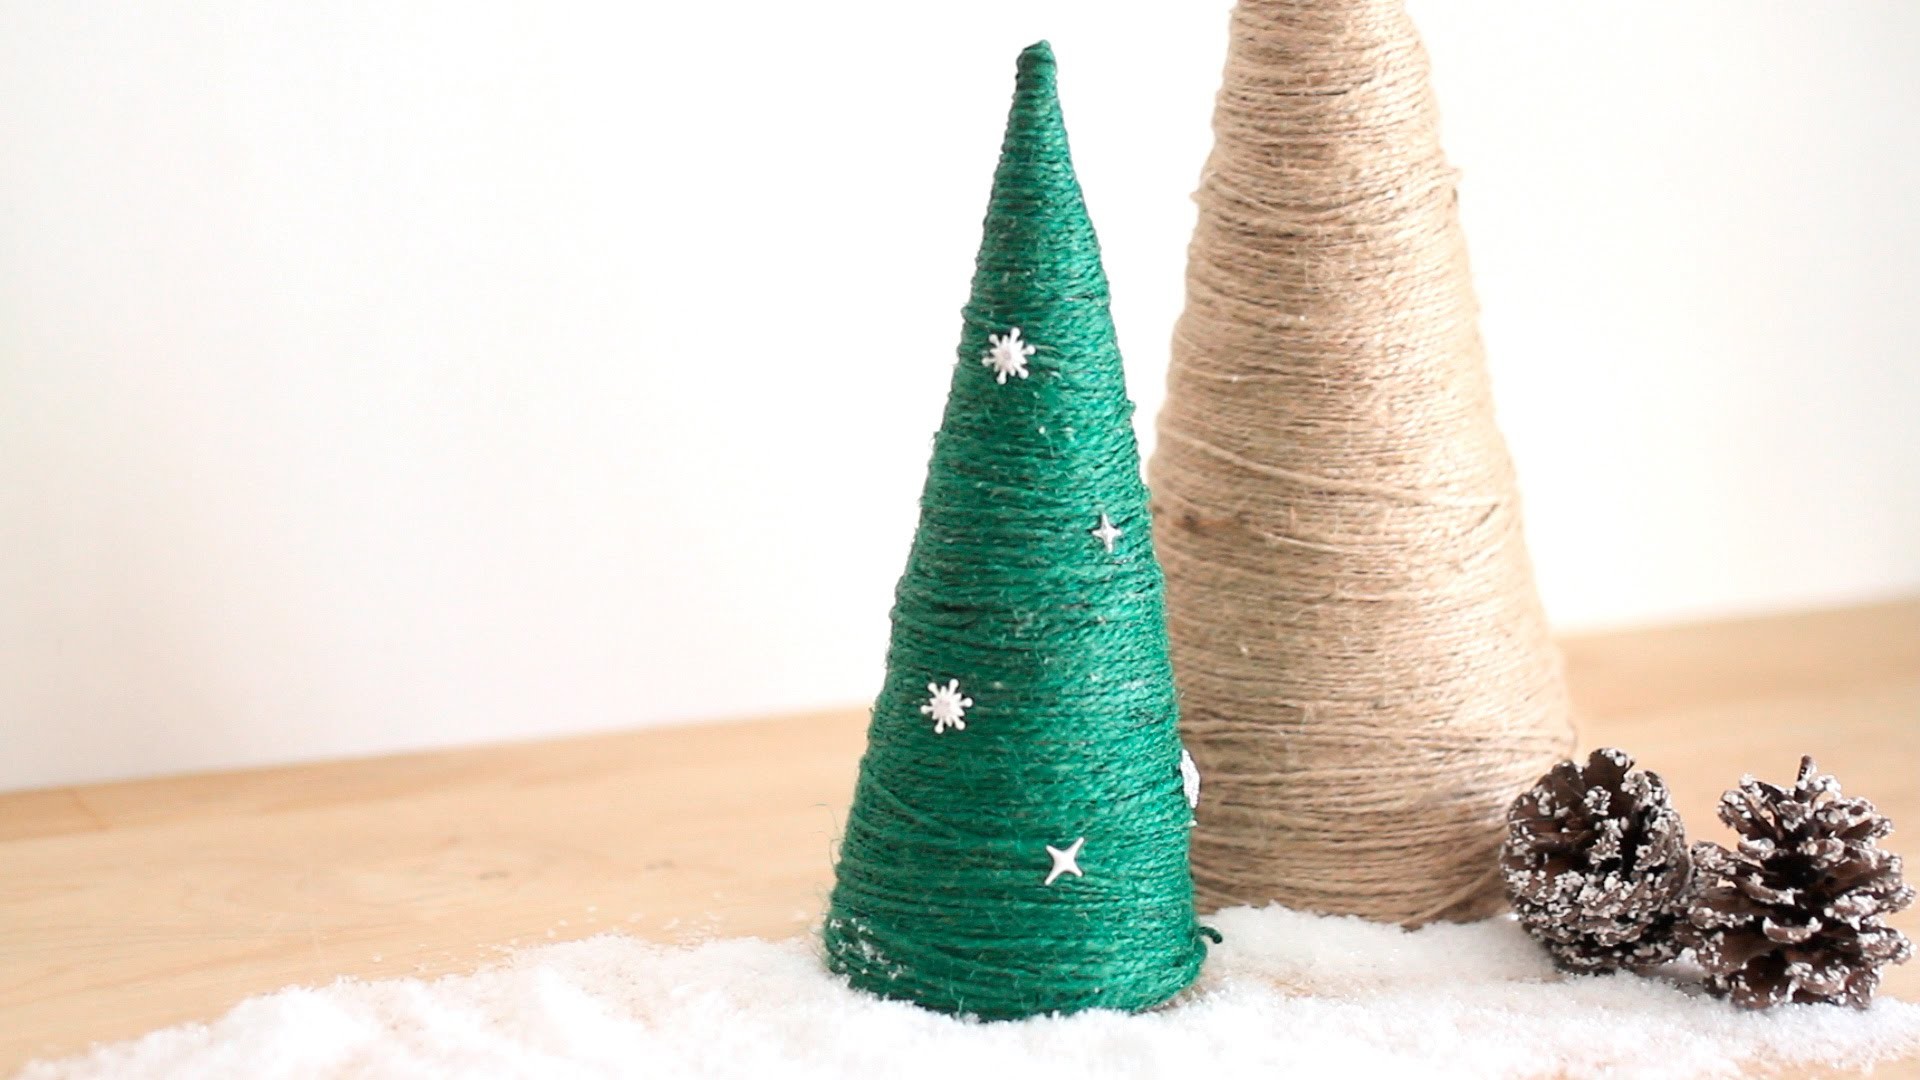 Manualidades de Navidad: Árbol de Navidad con cuerda DIY